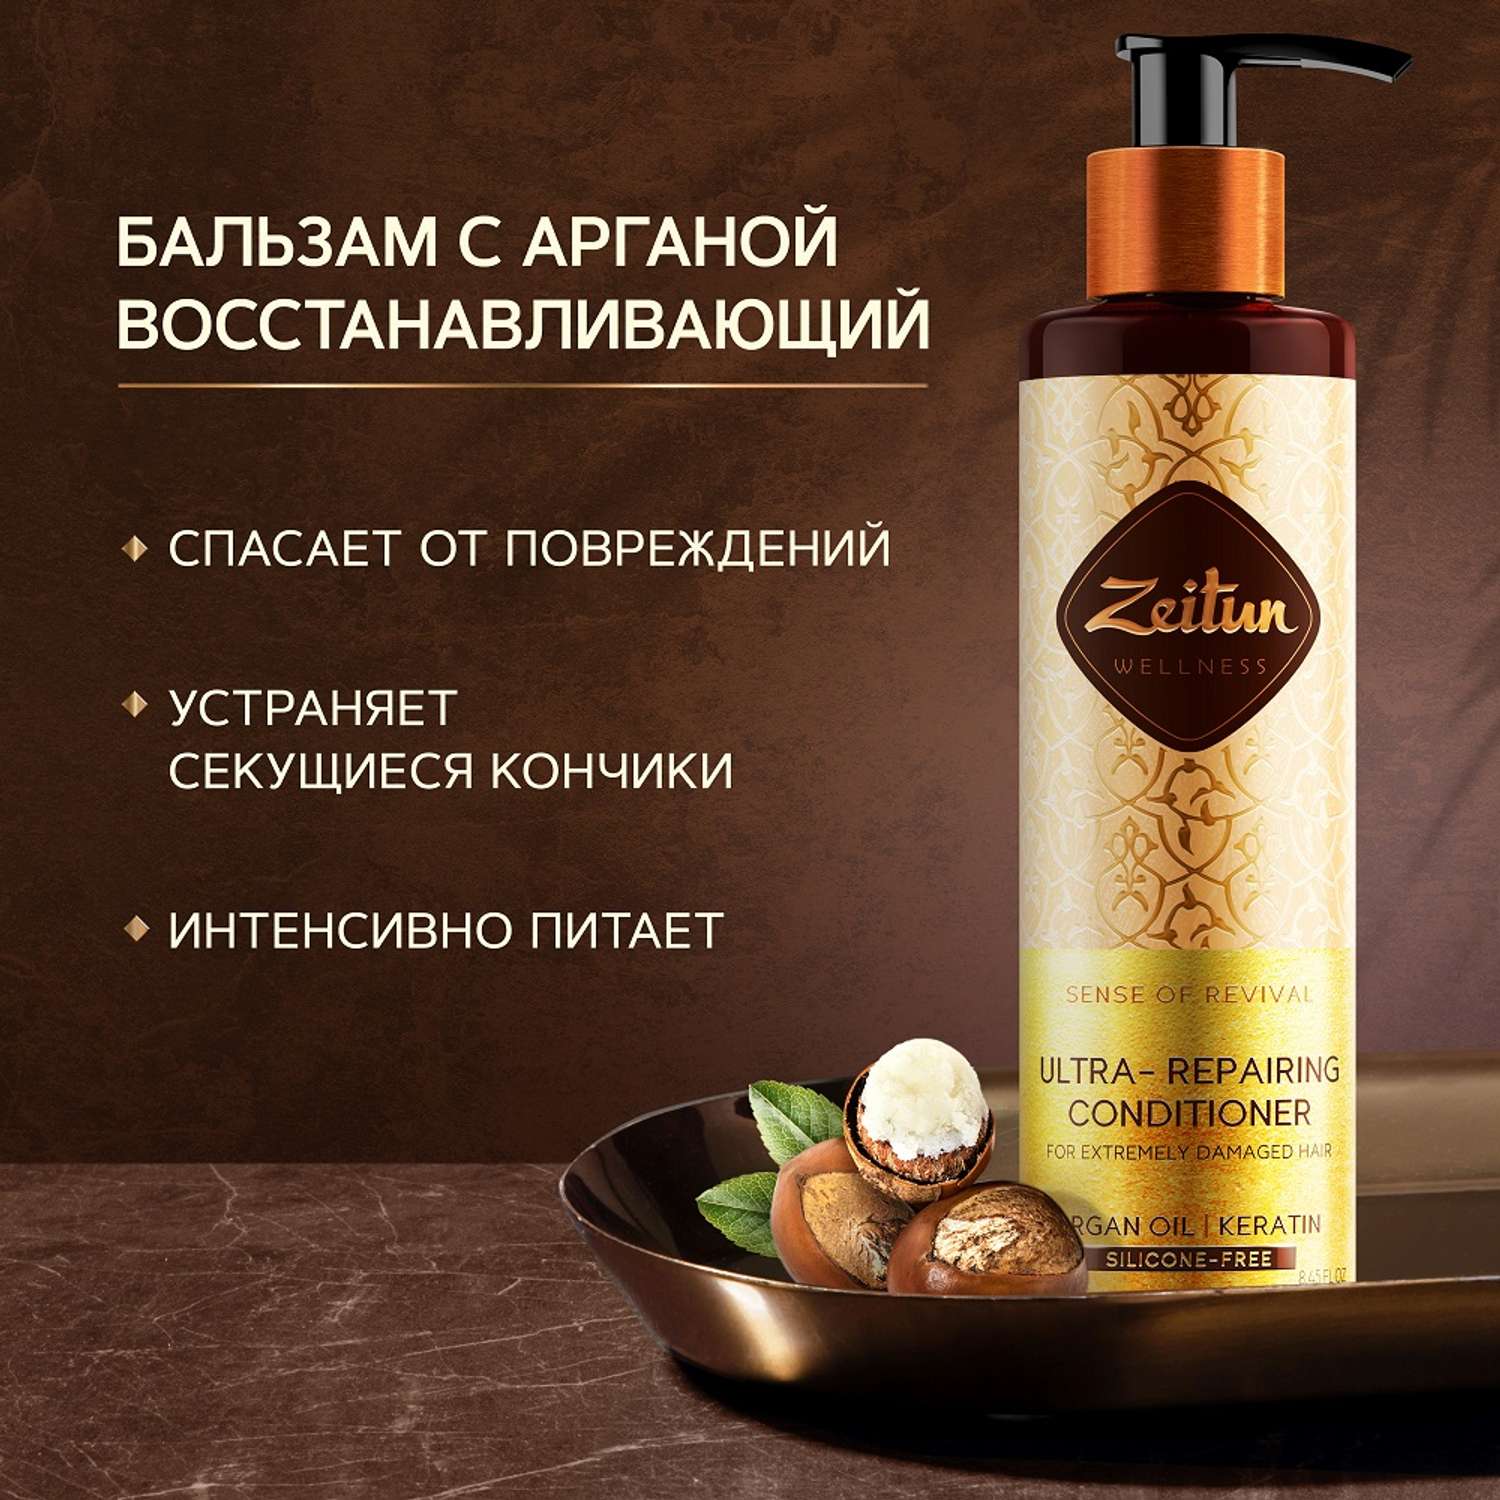 Бальзам-кондиционер Zeitun для увлажнения и восстановления сухих ломких и секущихся волос натуральный 250мл - фото 1